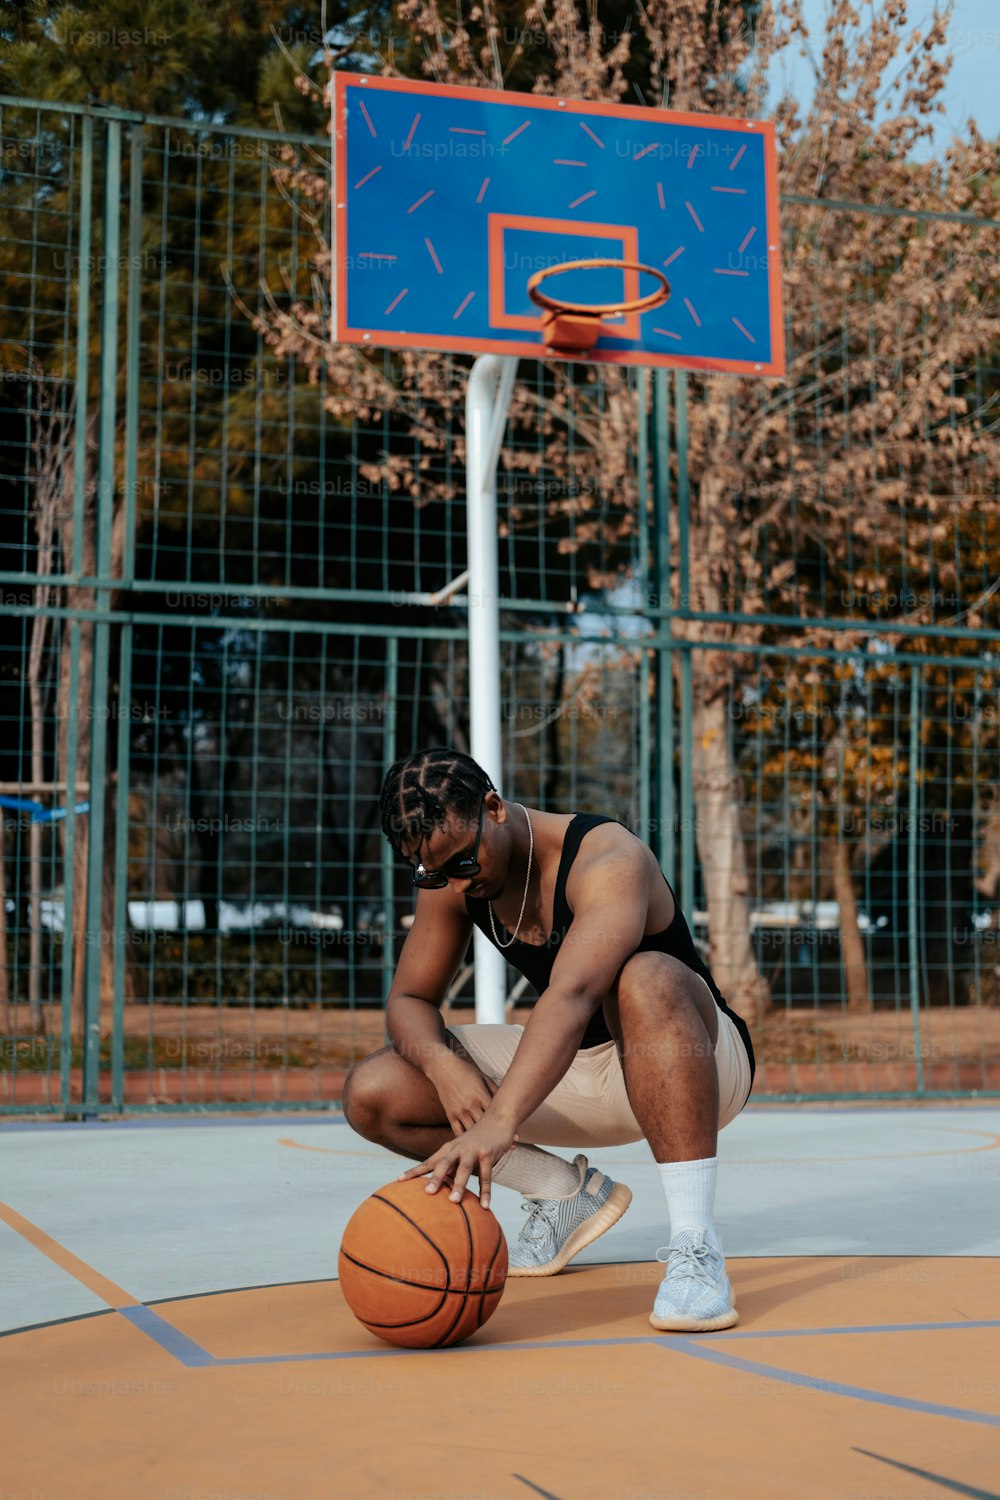 Un hombre arrodillado junto a una pelota de baloncesto en una cancha